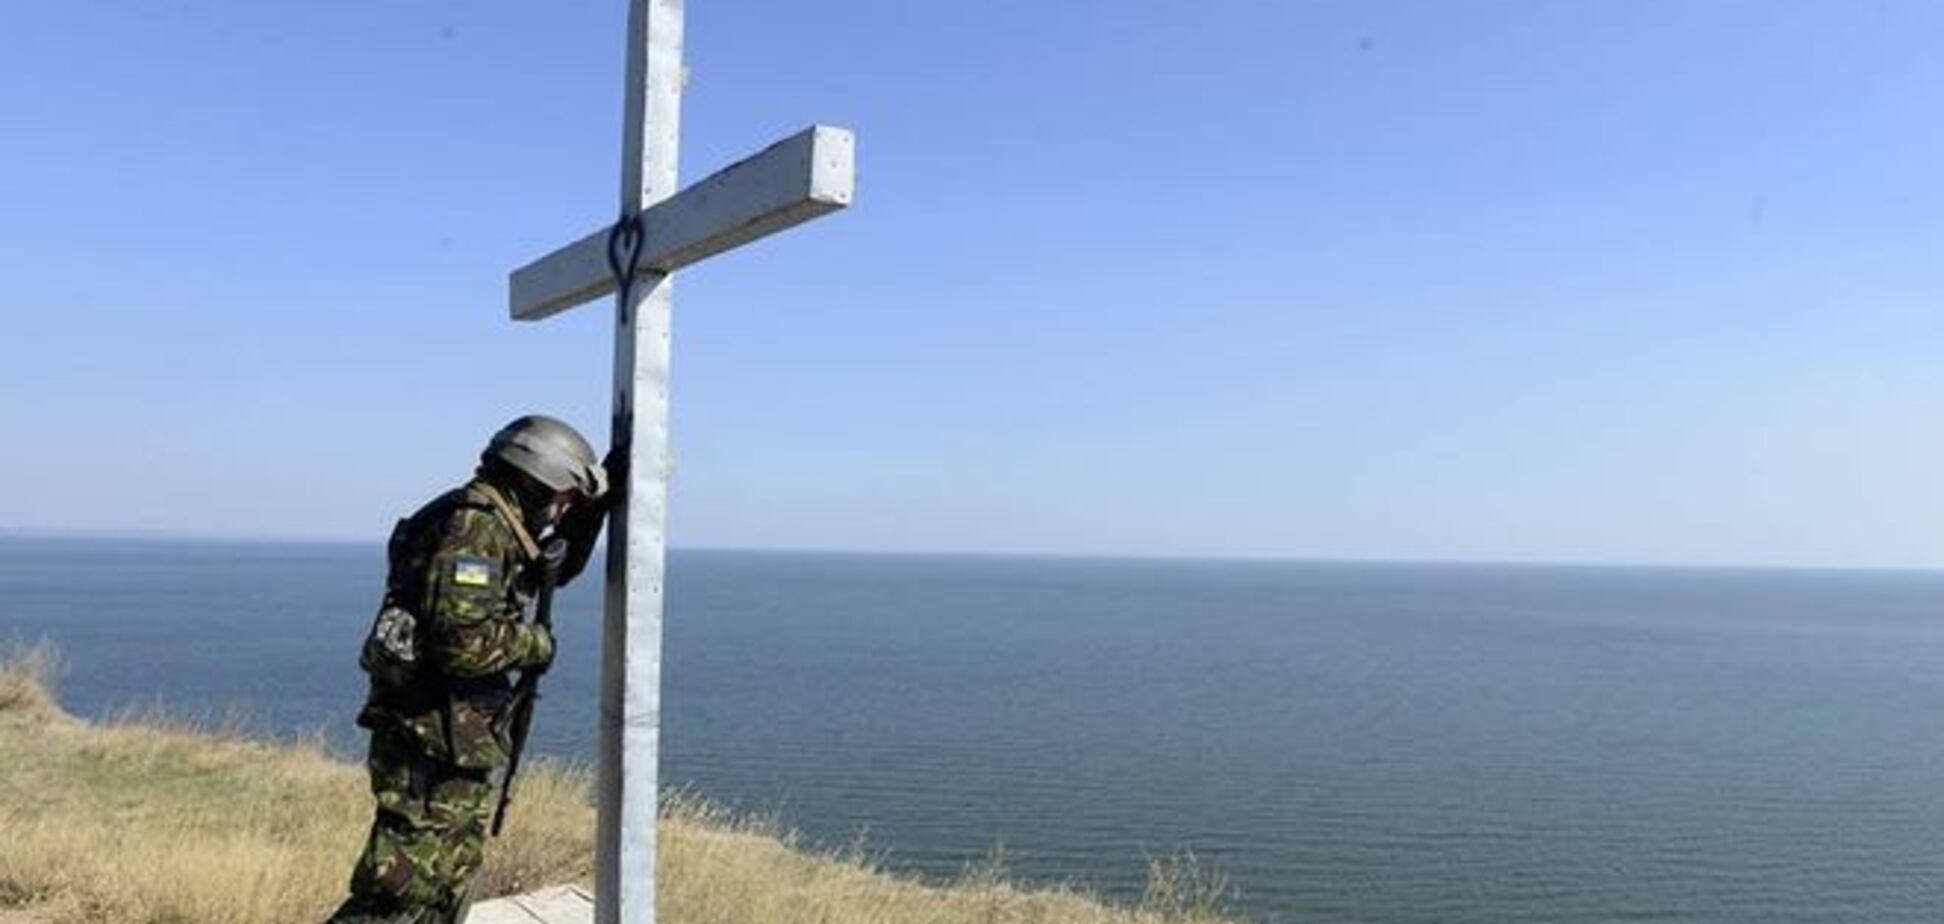 Фотографія 'Український солдат в молитві' облетіла світ